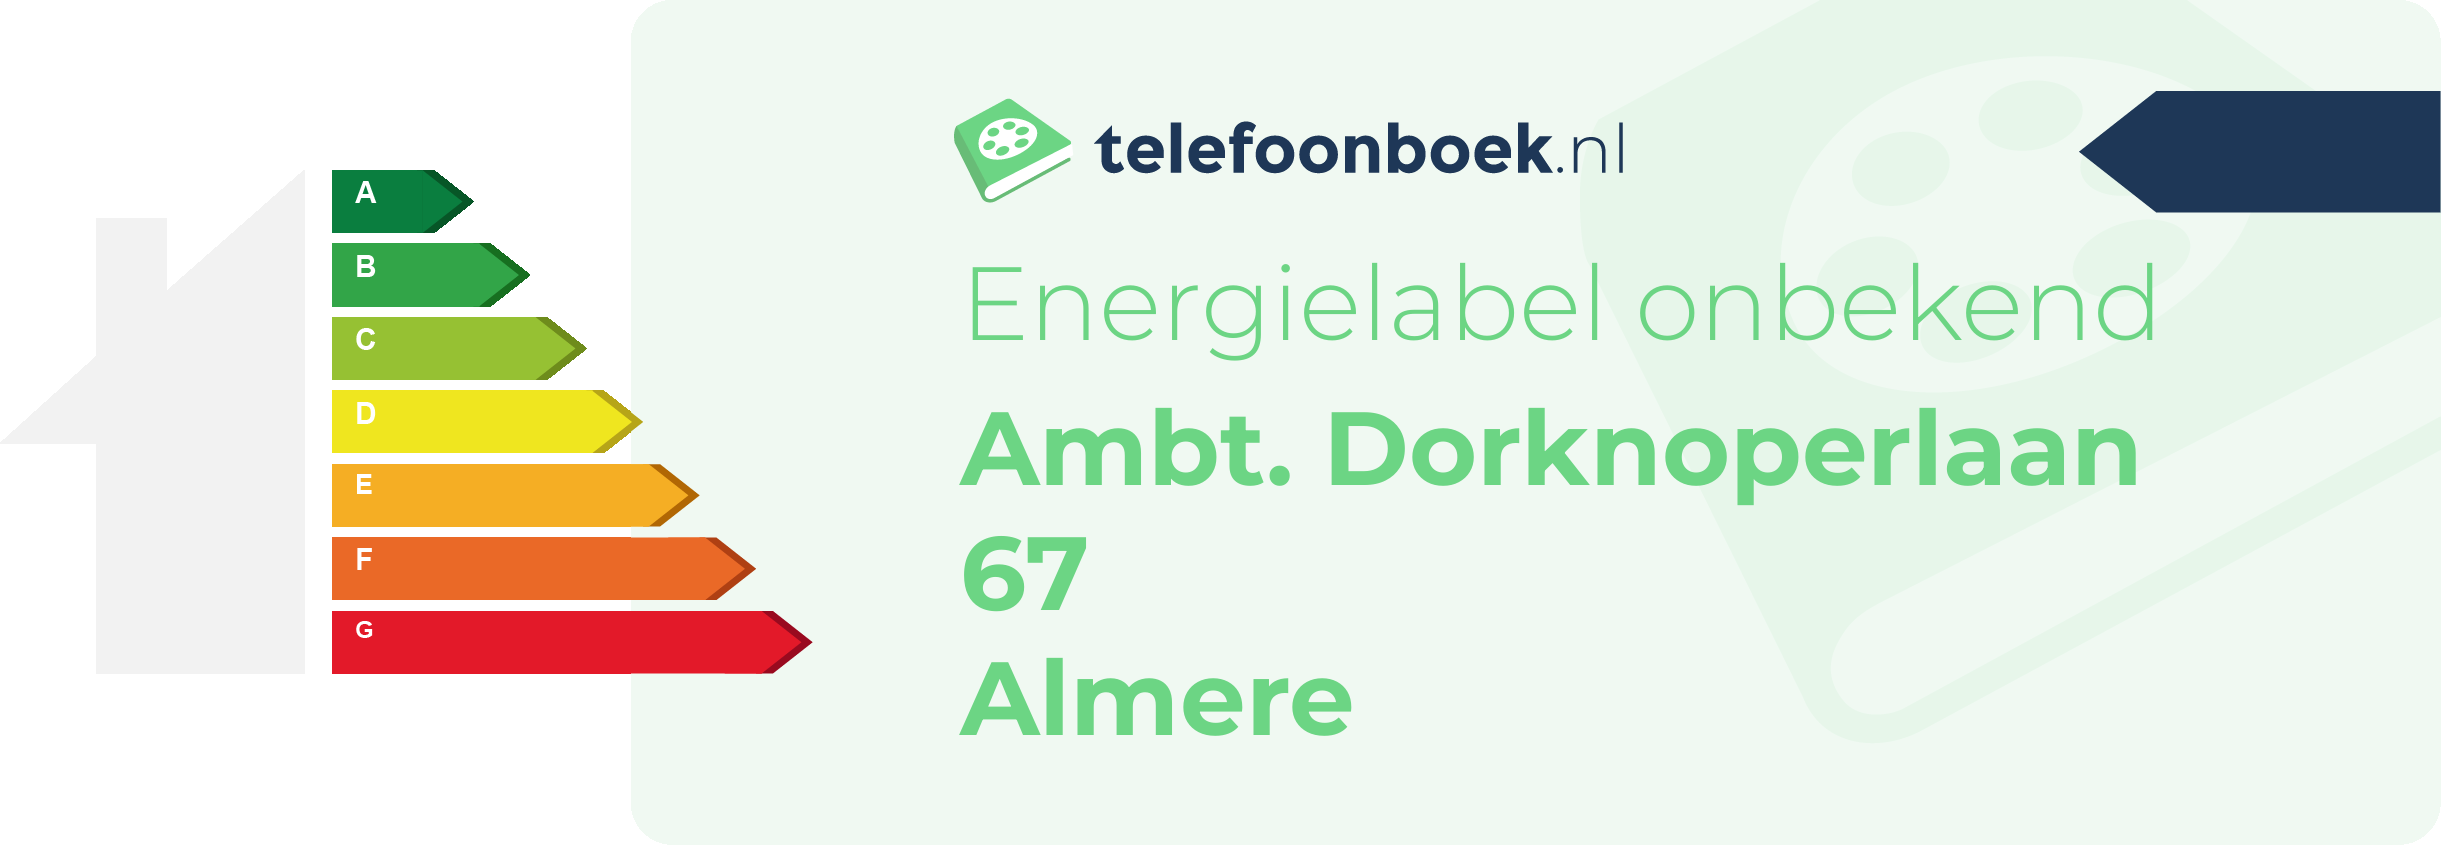 Energielabel Ambt. Dorknoperlaan 67 Almere